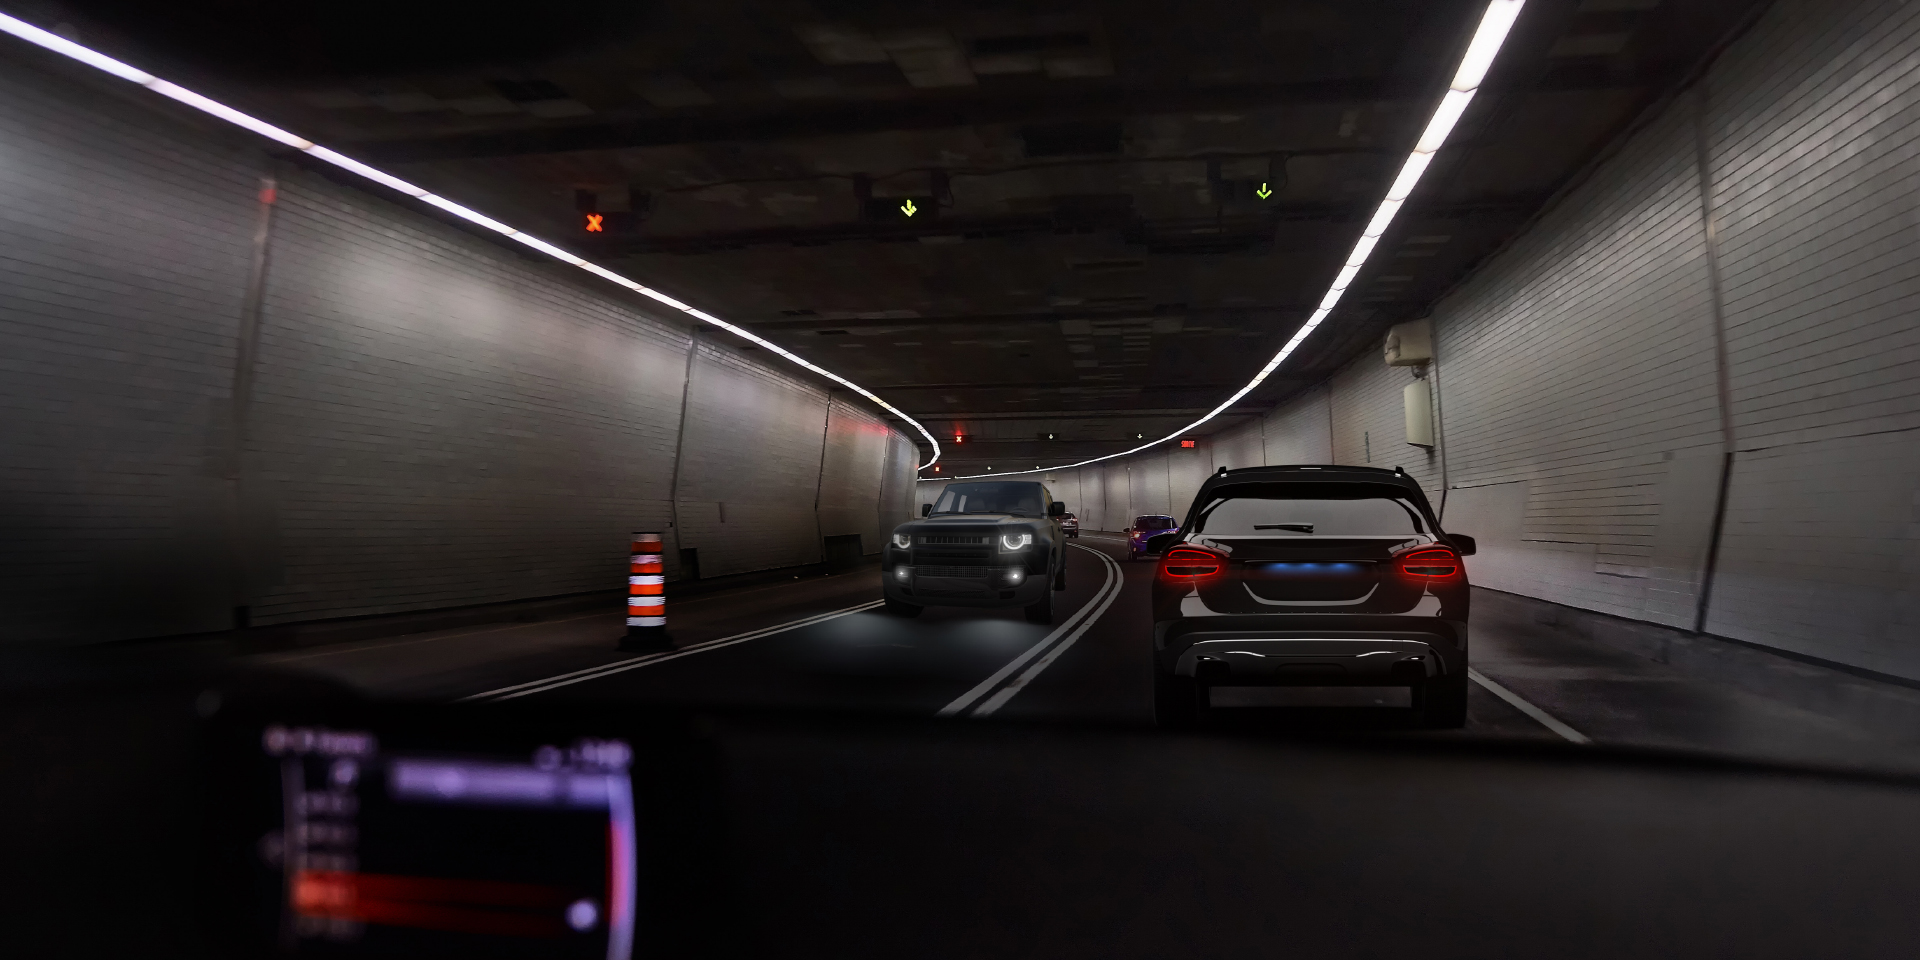 两张面对复杂光线挑战的驾驶场景主观视角对比图，蔡司驾驶型镜片减少眩光困扰，视野更清晰。